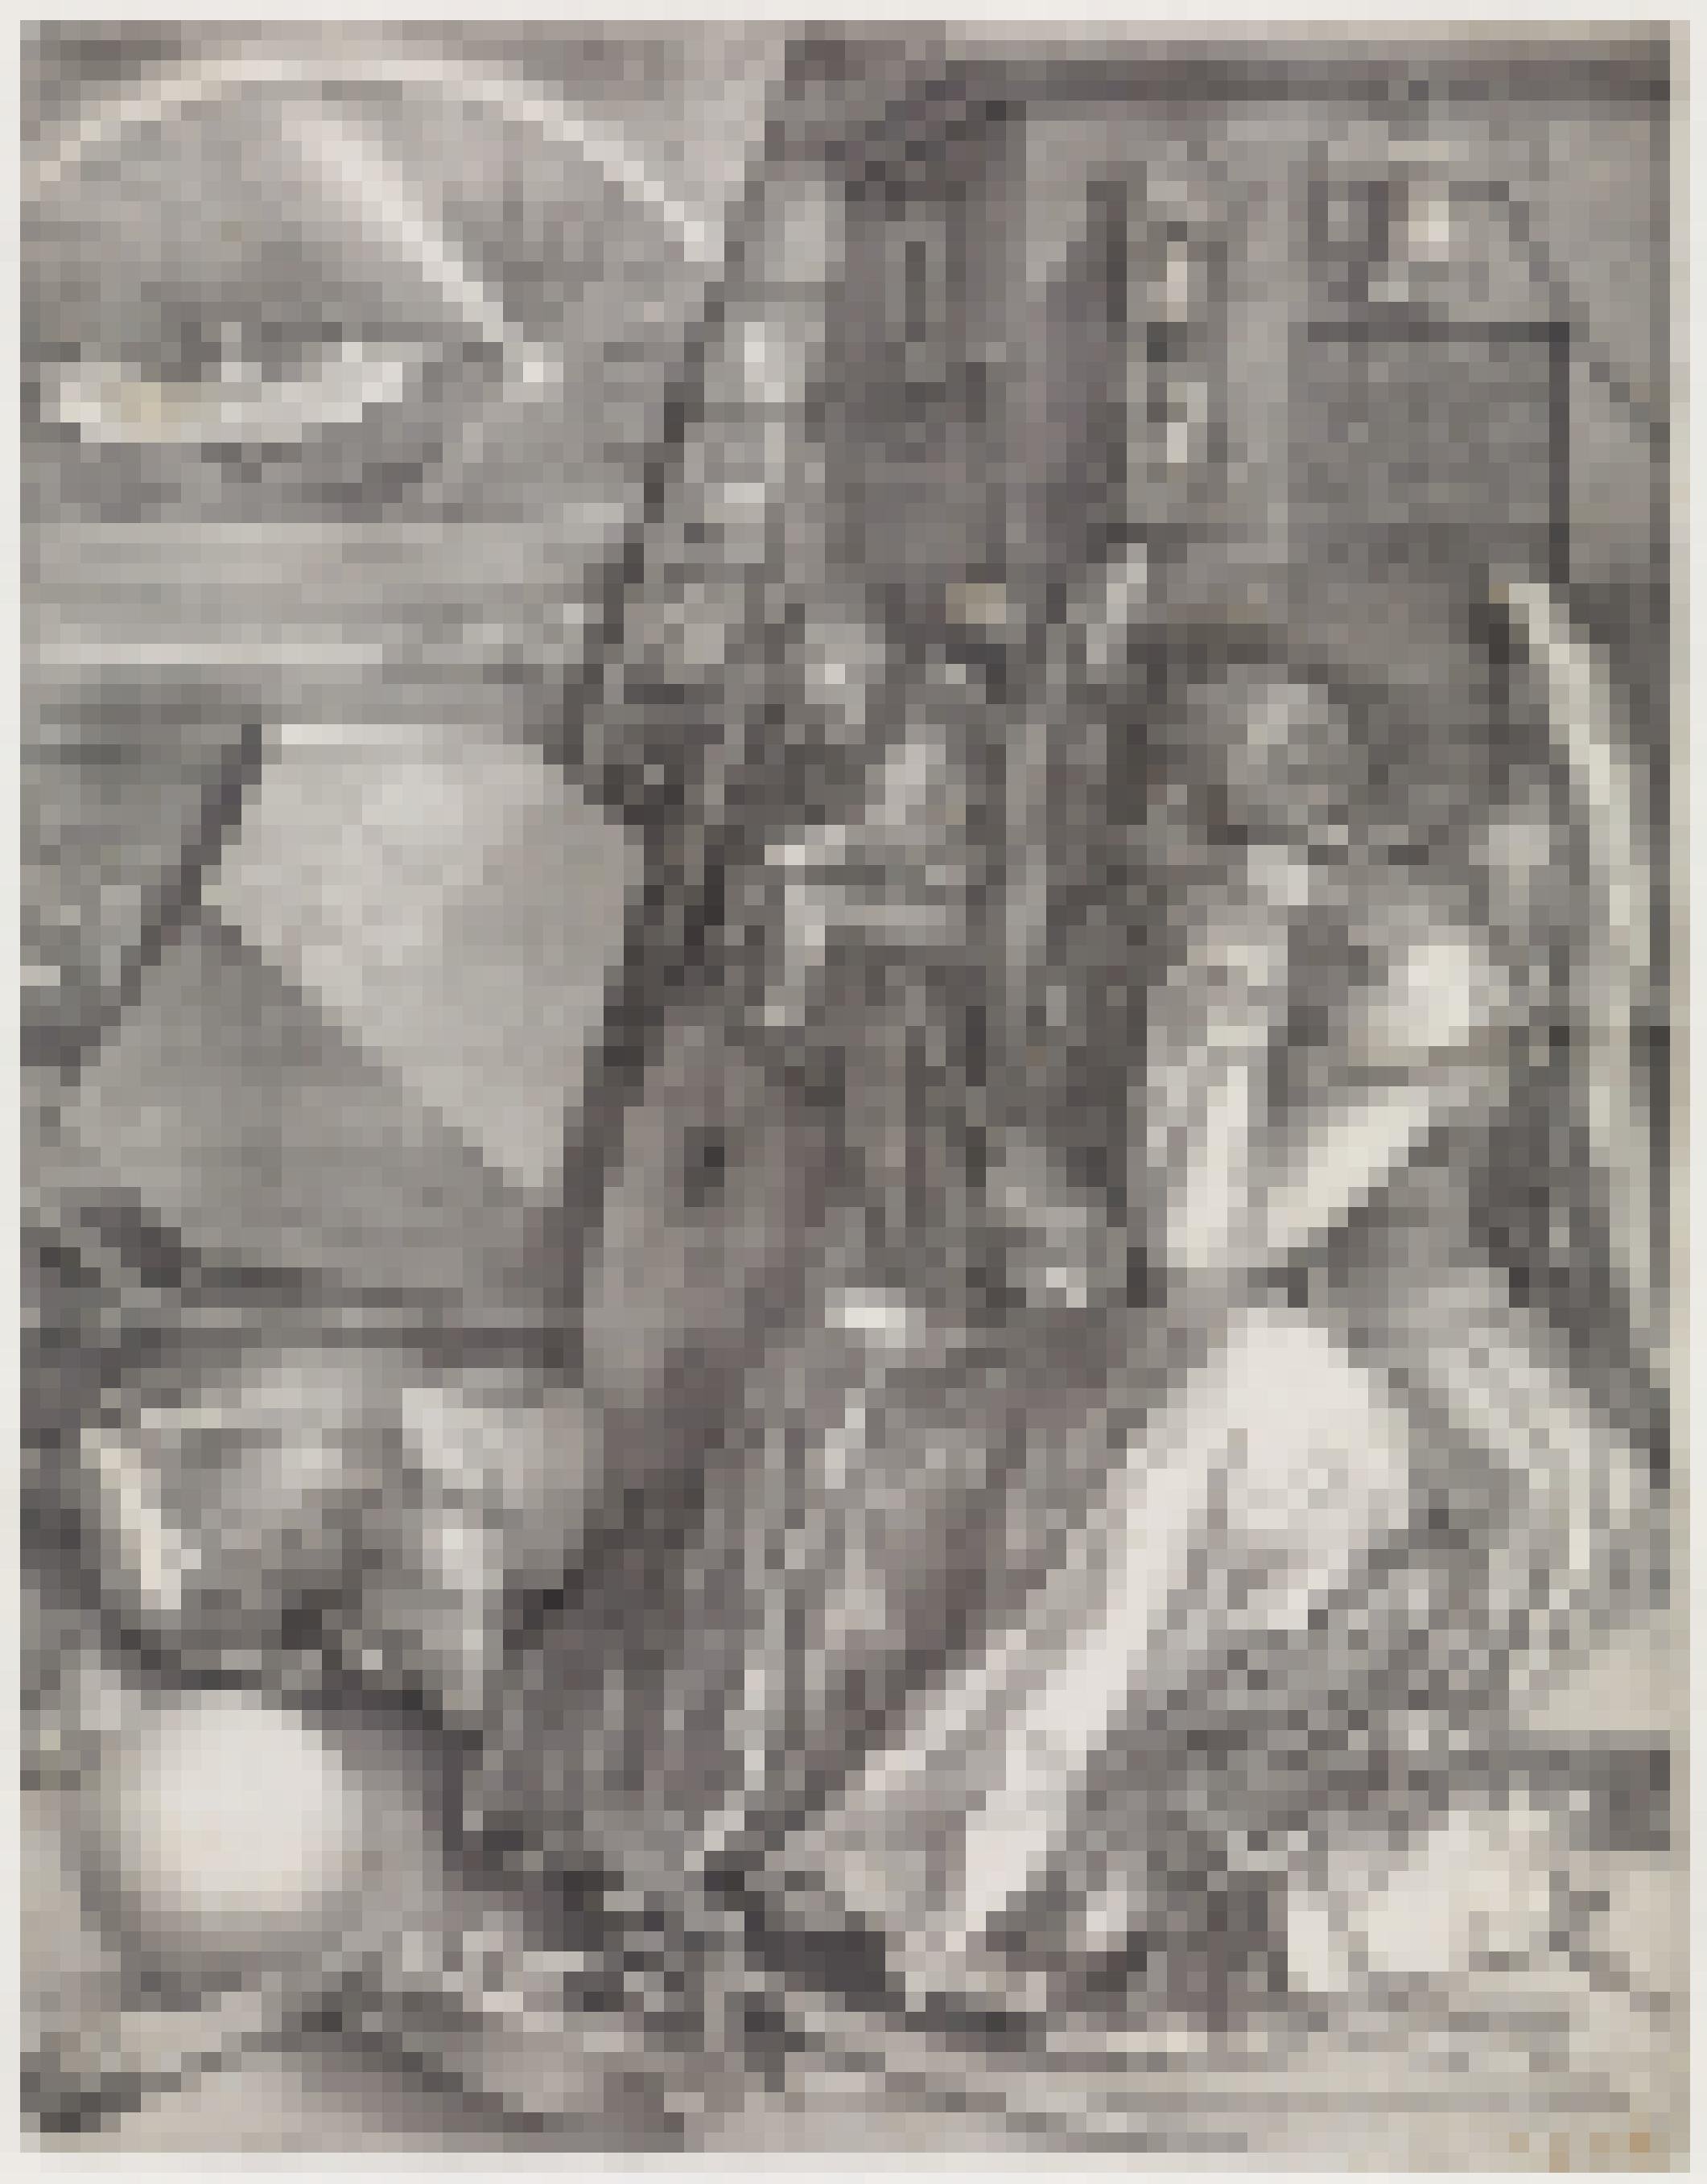 Das Foto zeigt einen fein gearbeiteten Kupferstich. Hauptfigur ist eine sitzende Frau, die den Kopf in die Hand gestützt hat.